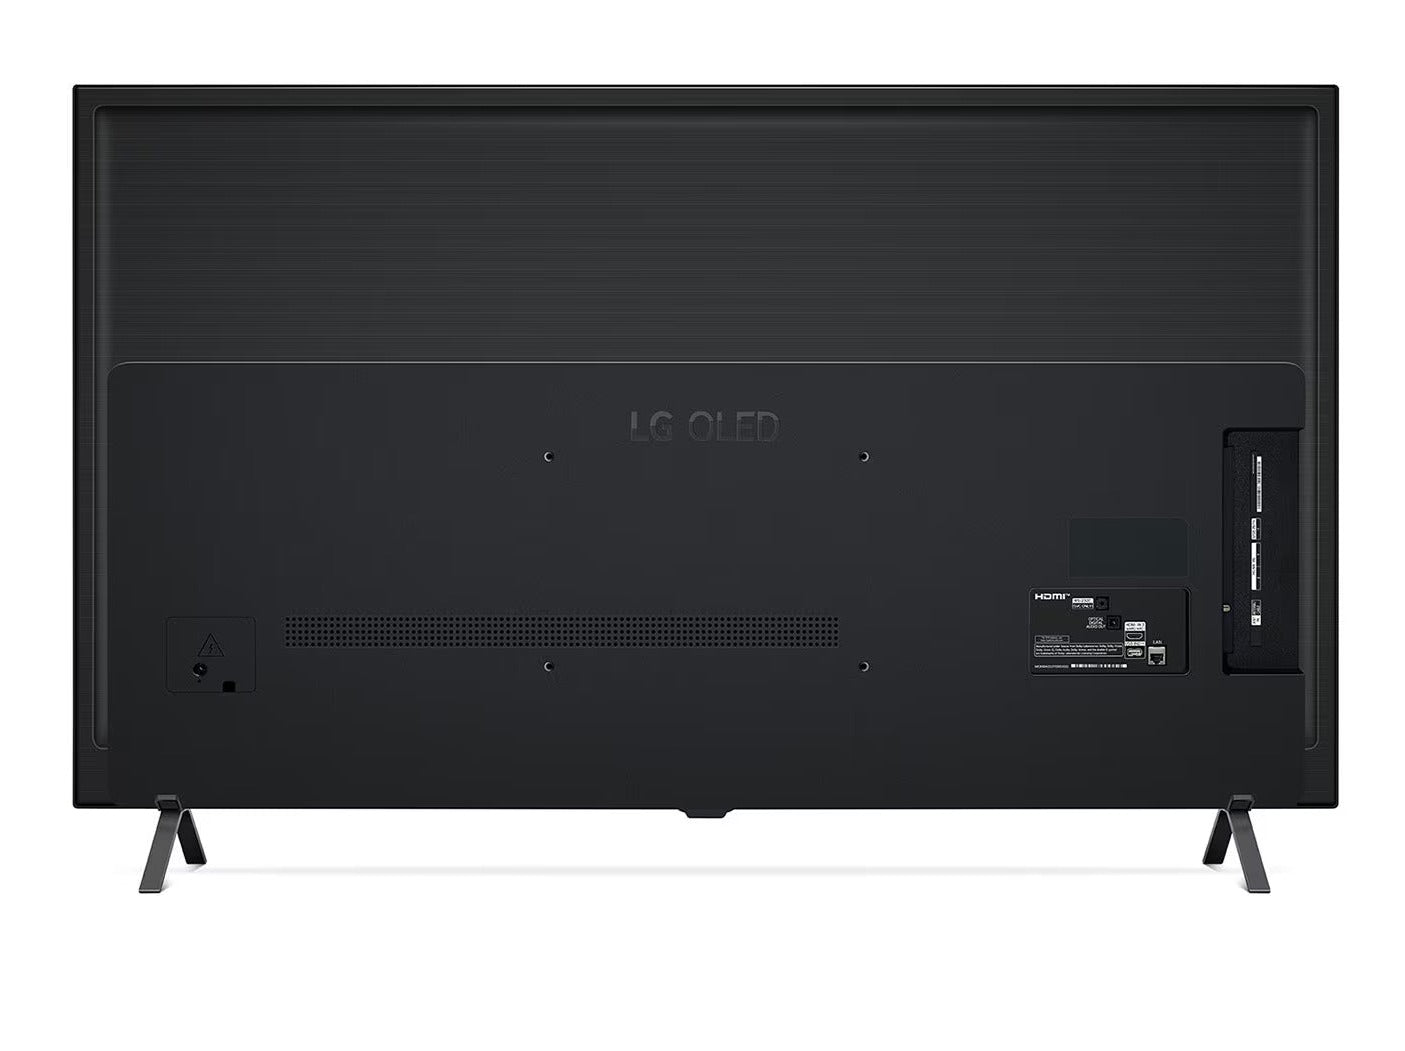 LG 55A3 OLED televízió hátulnézetben talpon.